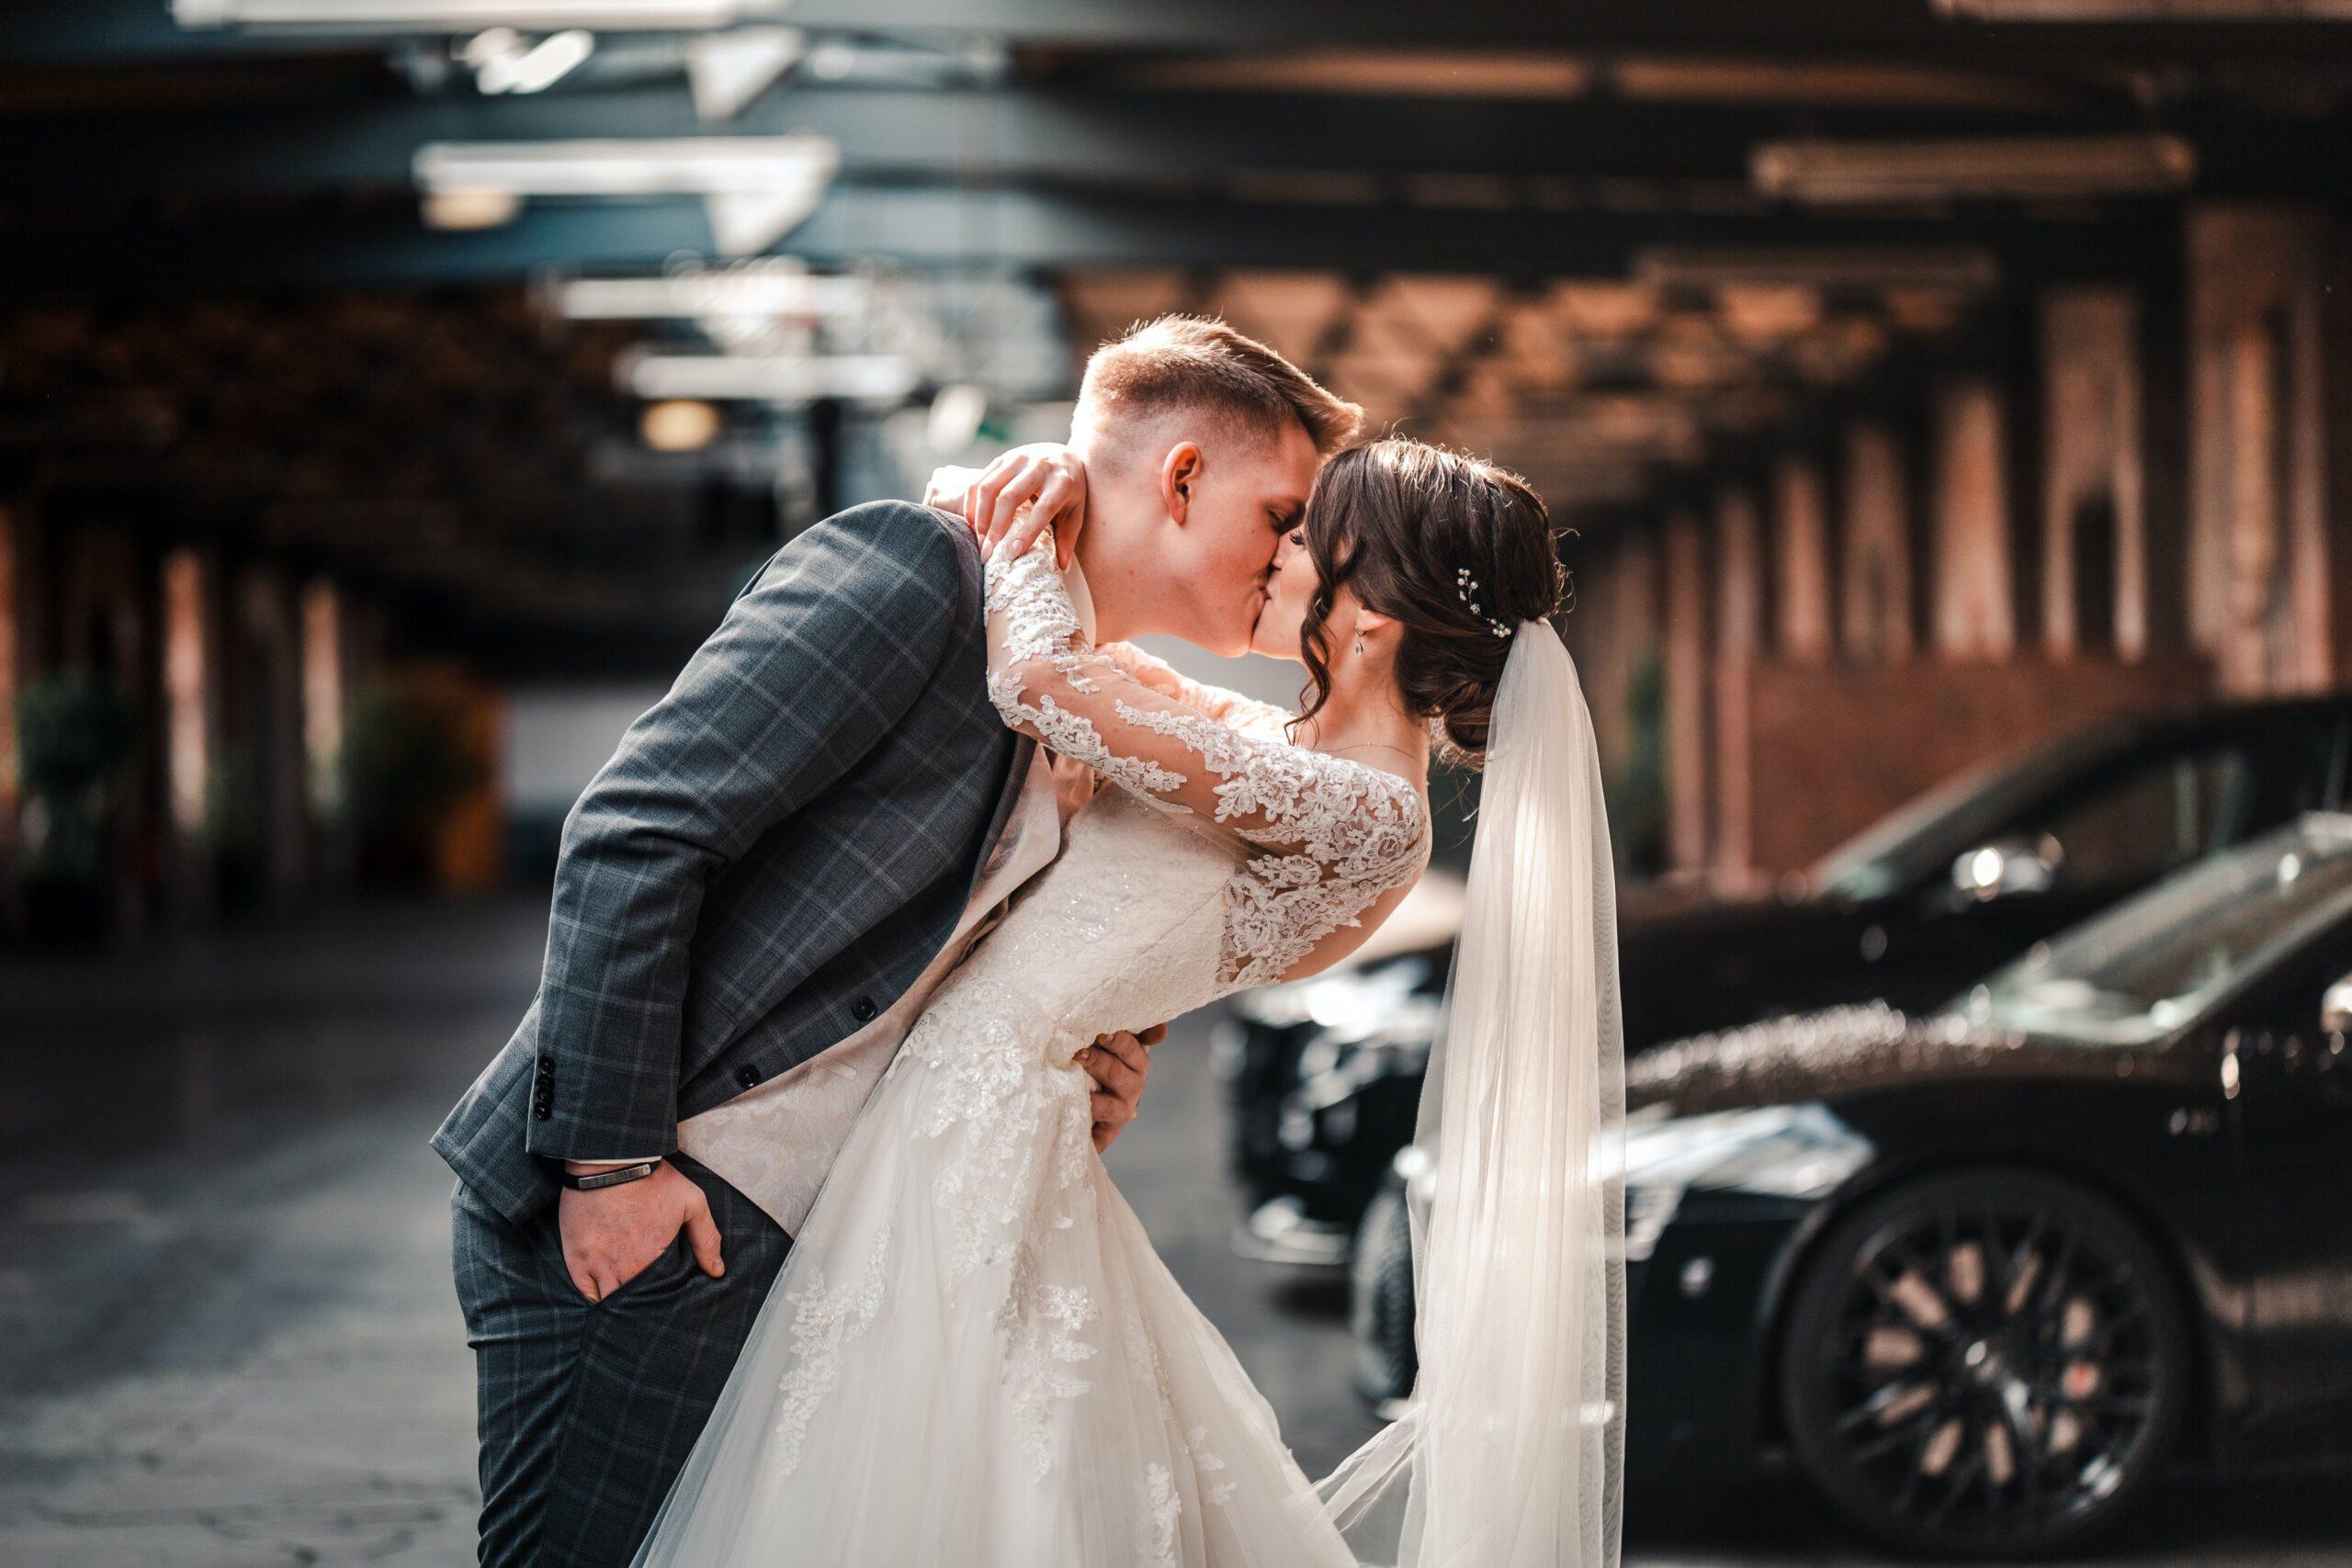 Ein Herrenausstatter in München sorgt für den perfekten Auftritt bei der Hochzeit